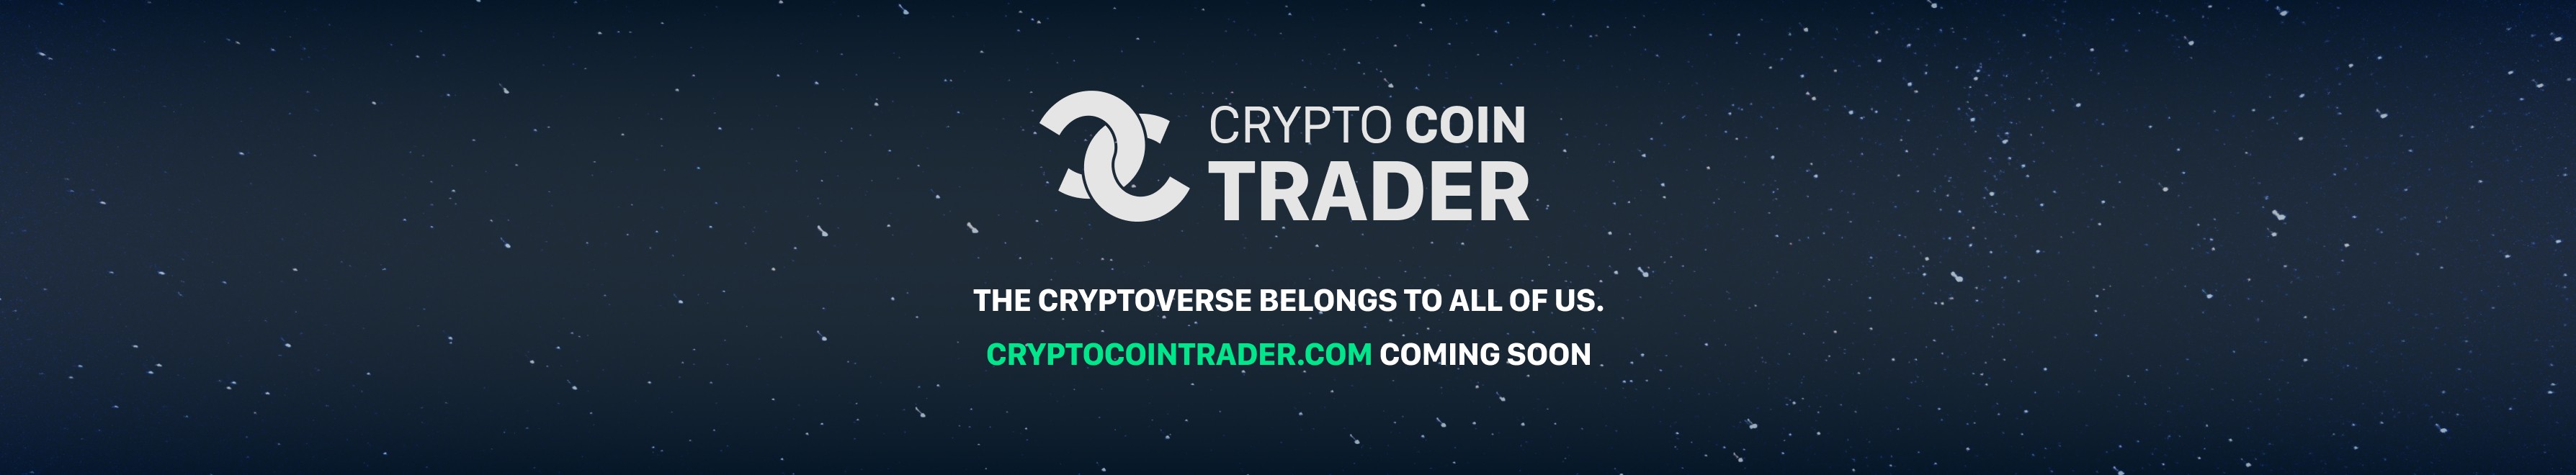 crypto coin trader miglior sito per il commercio bitcoin uk